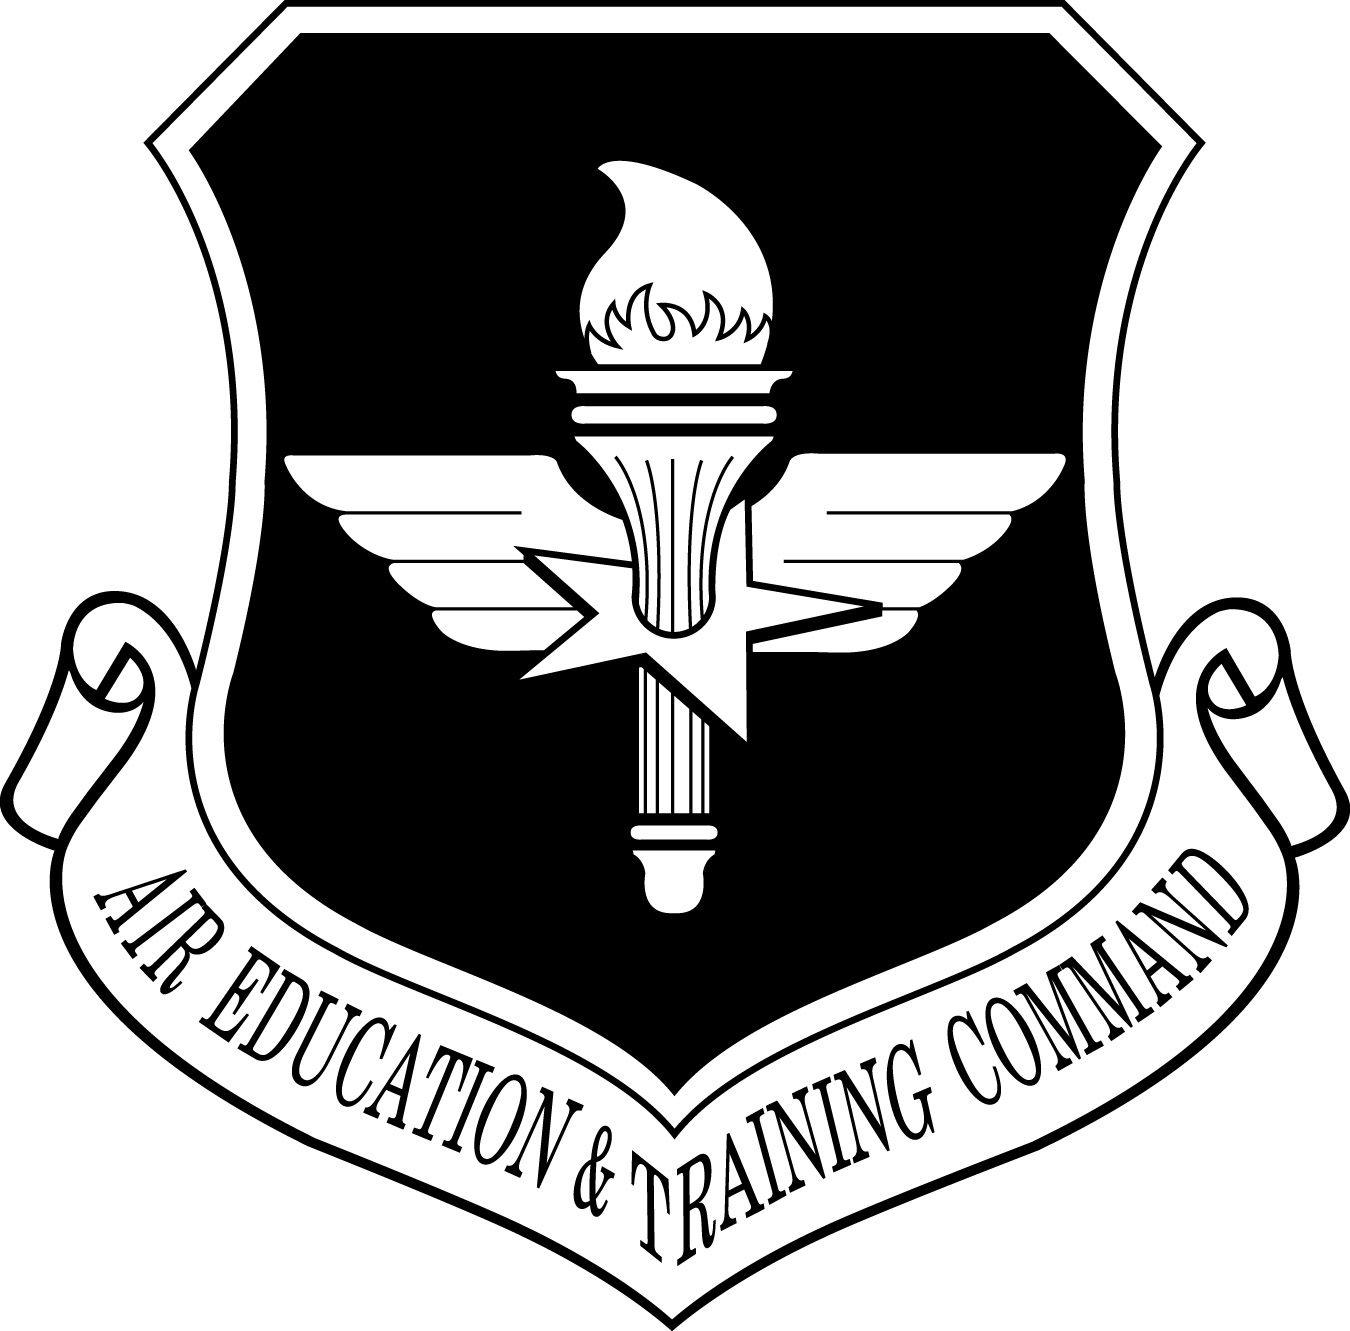 AETC Logo - Air Education & Training Command shield